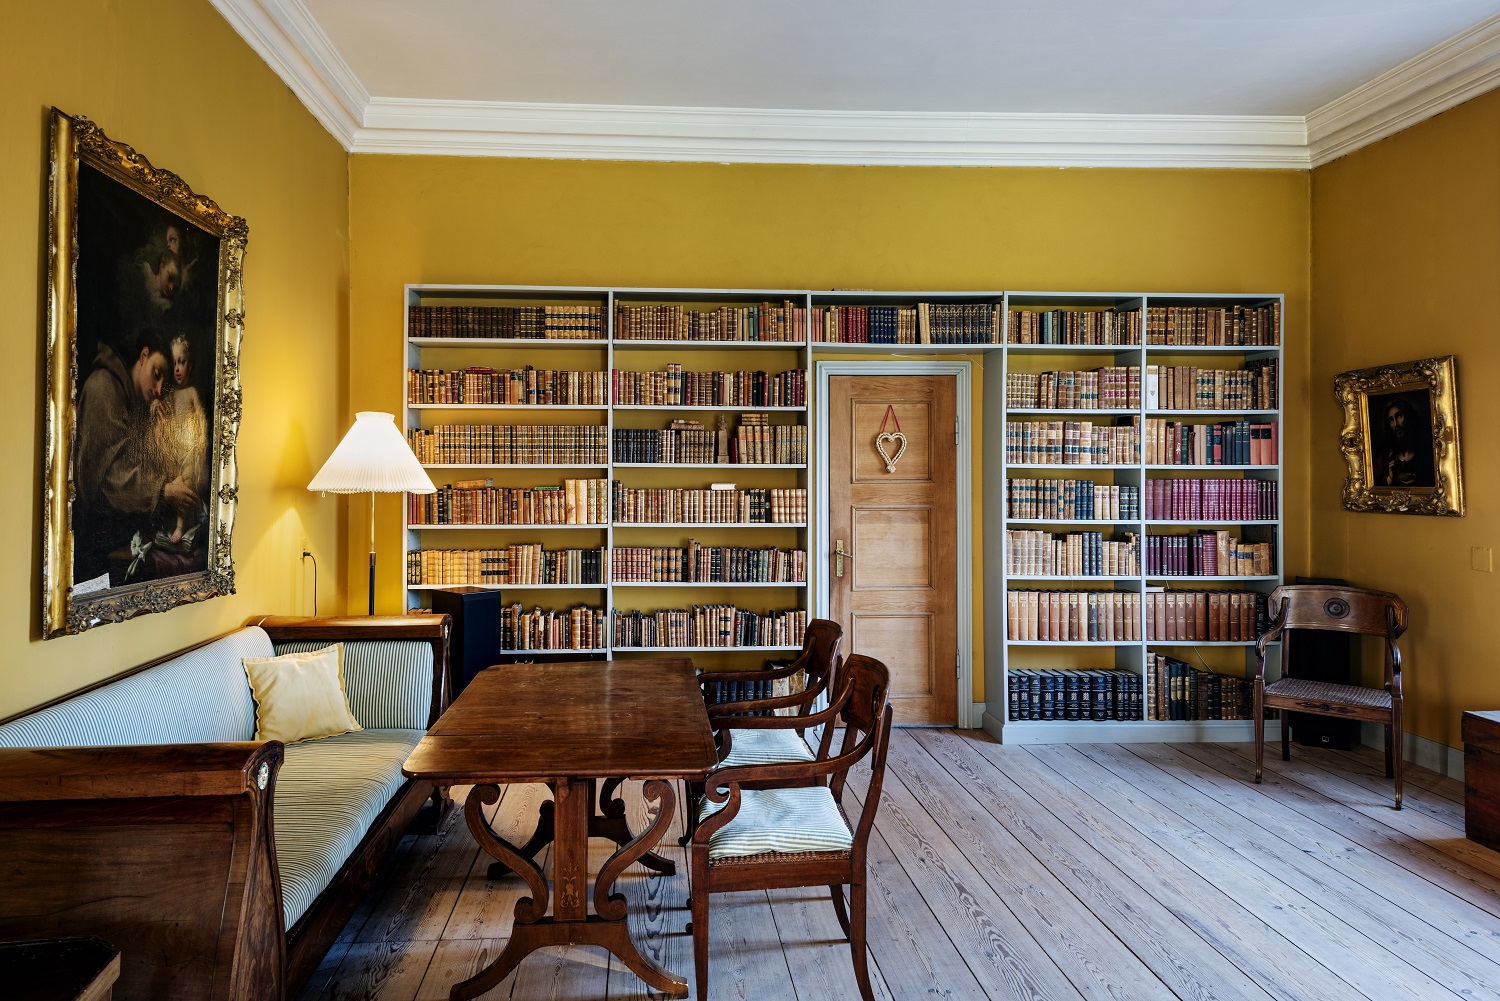 Et levende rum med gule vægge prydet af bogreoler.